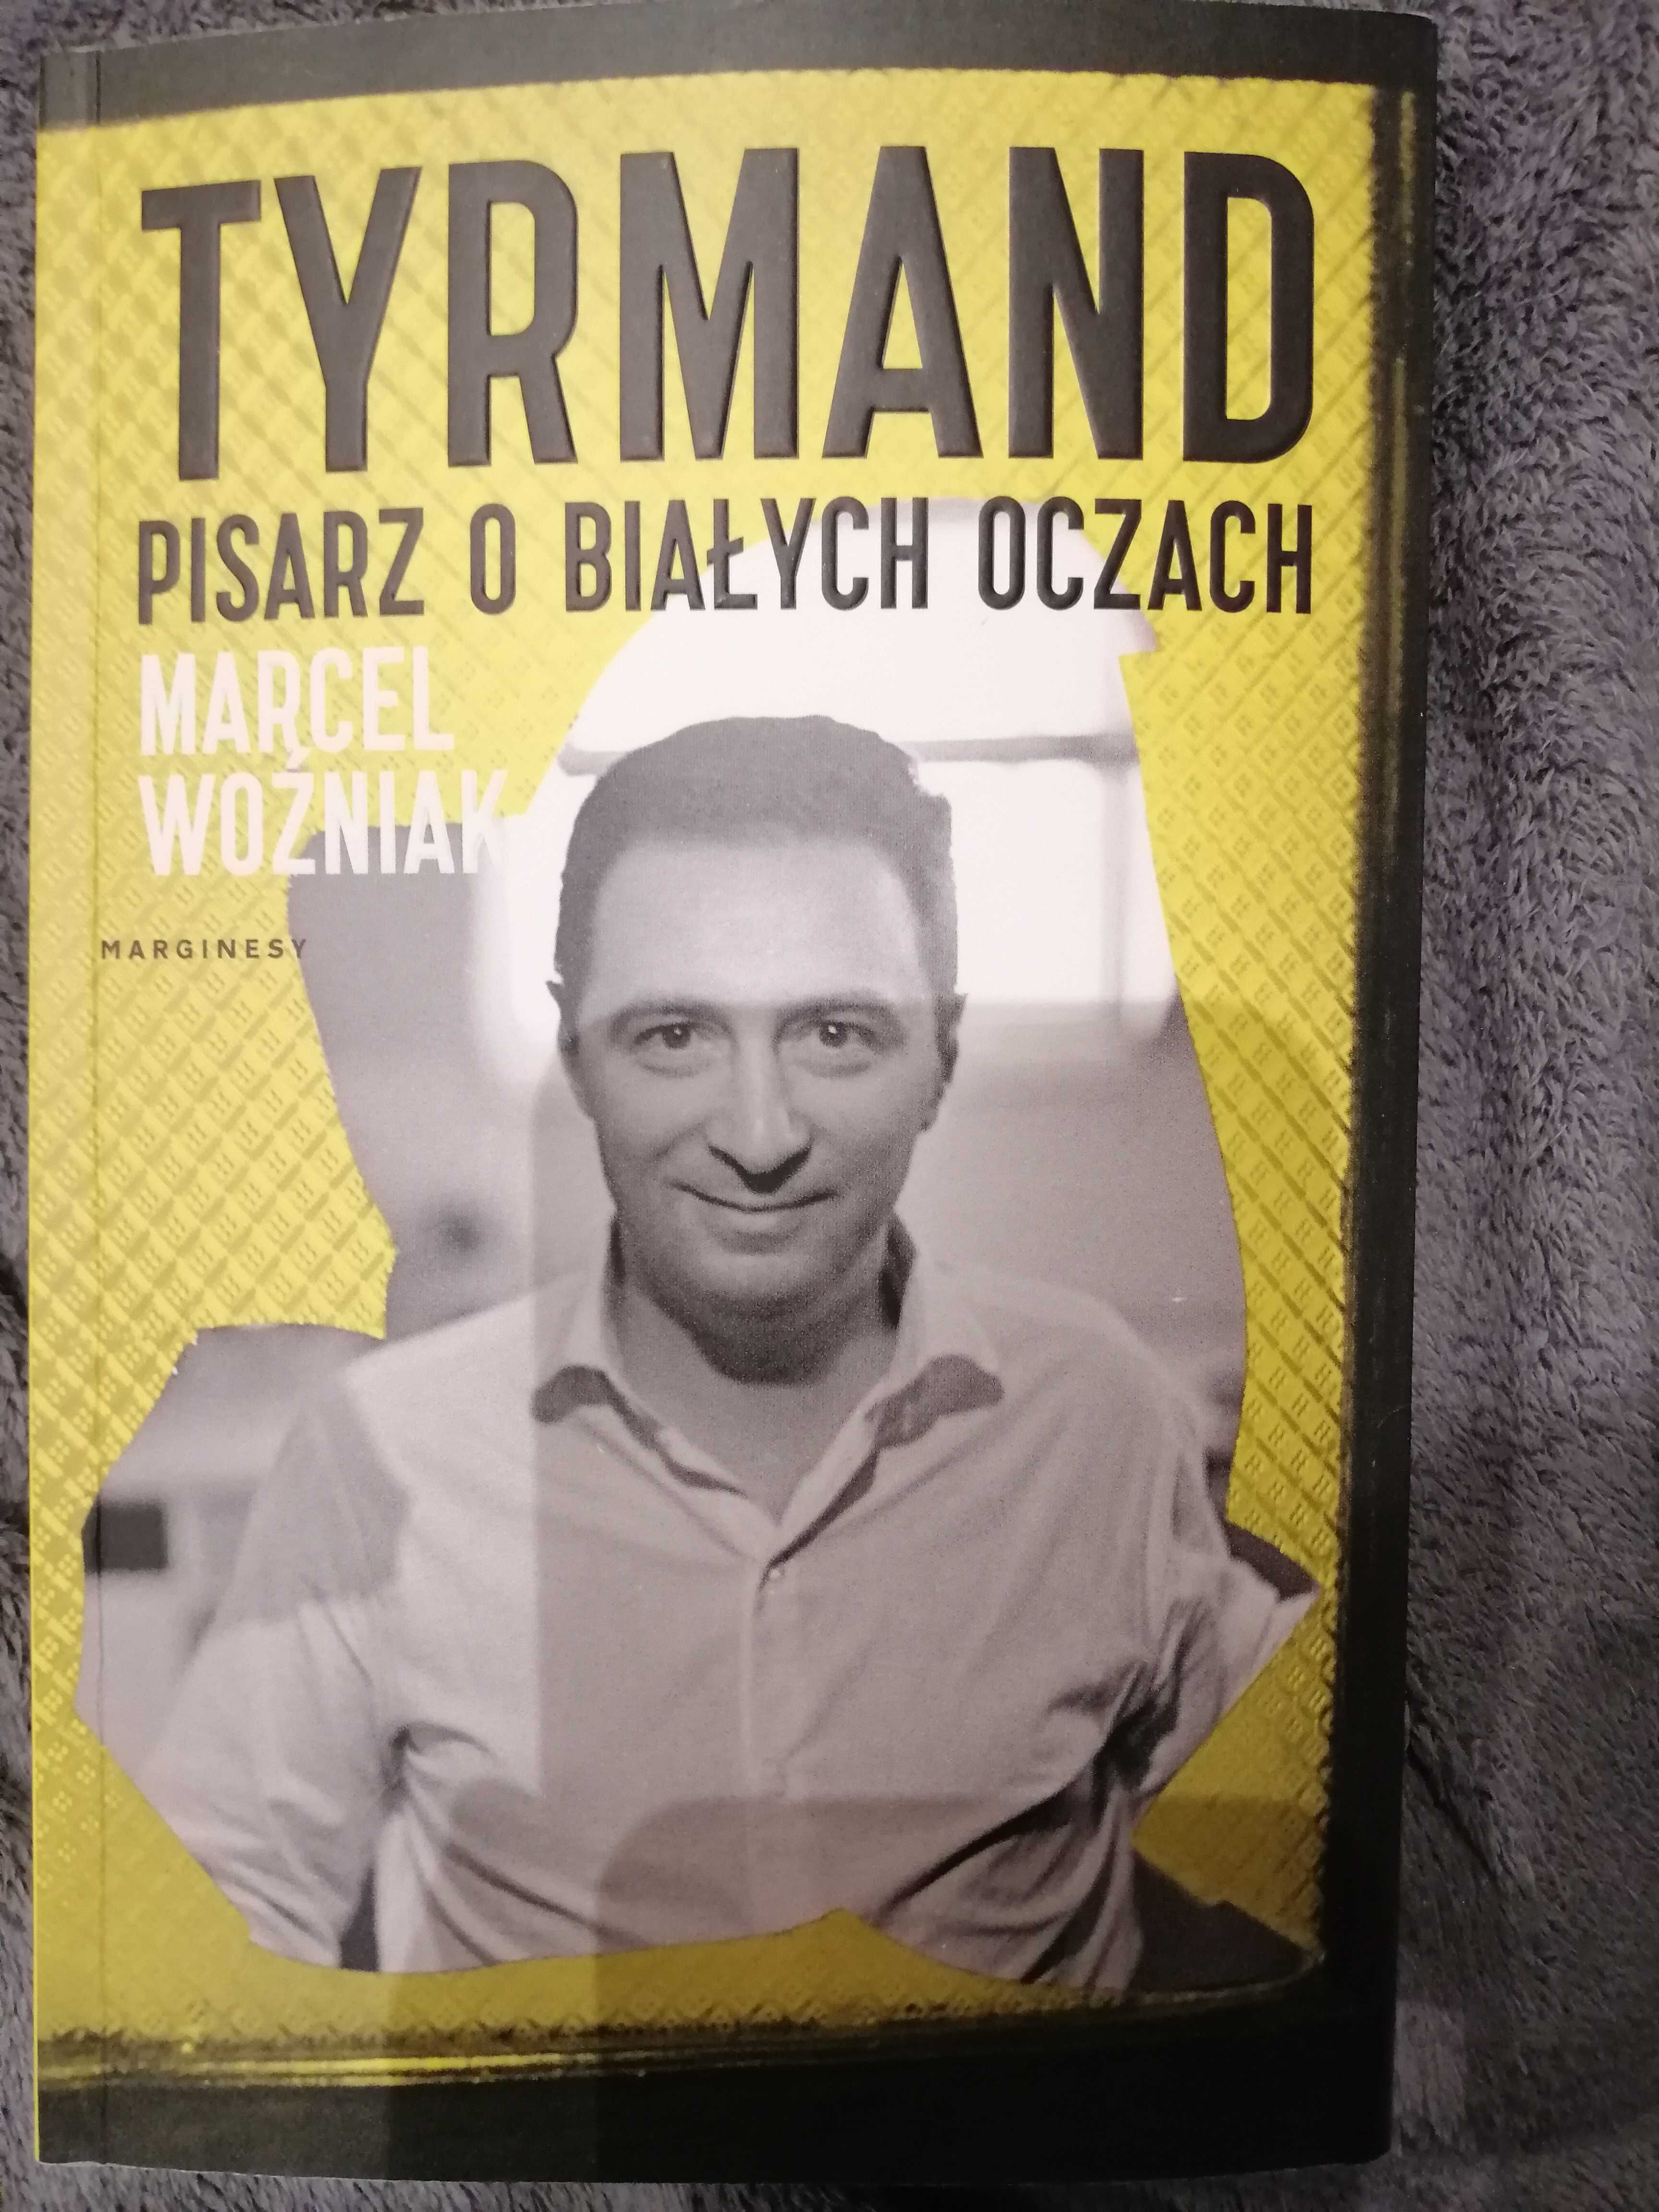 Tyrmand pisarz o białych oczach - Marcel Woźniak